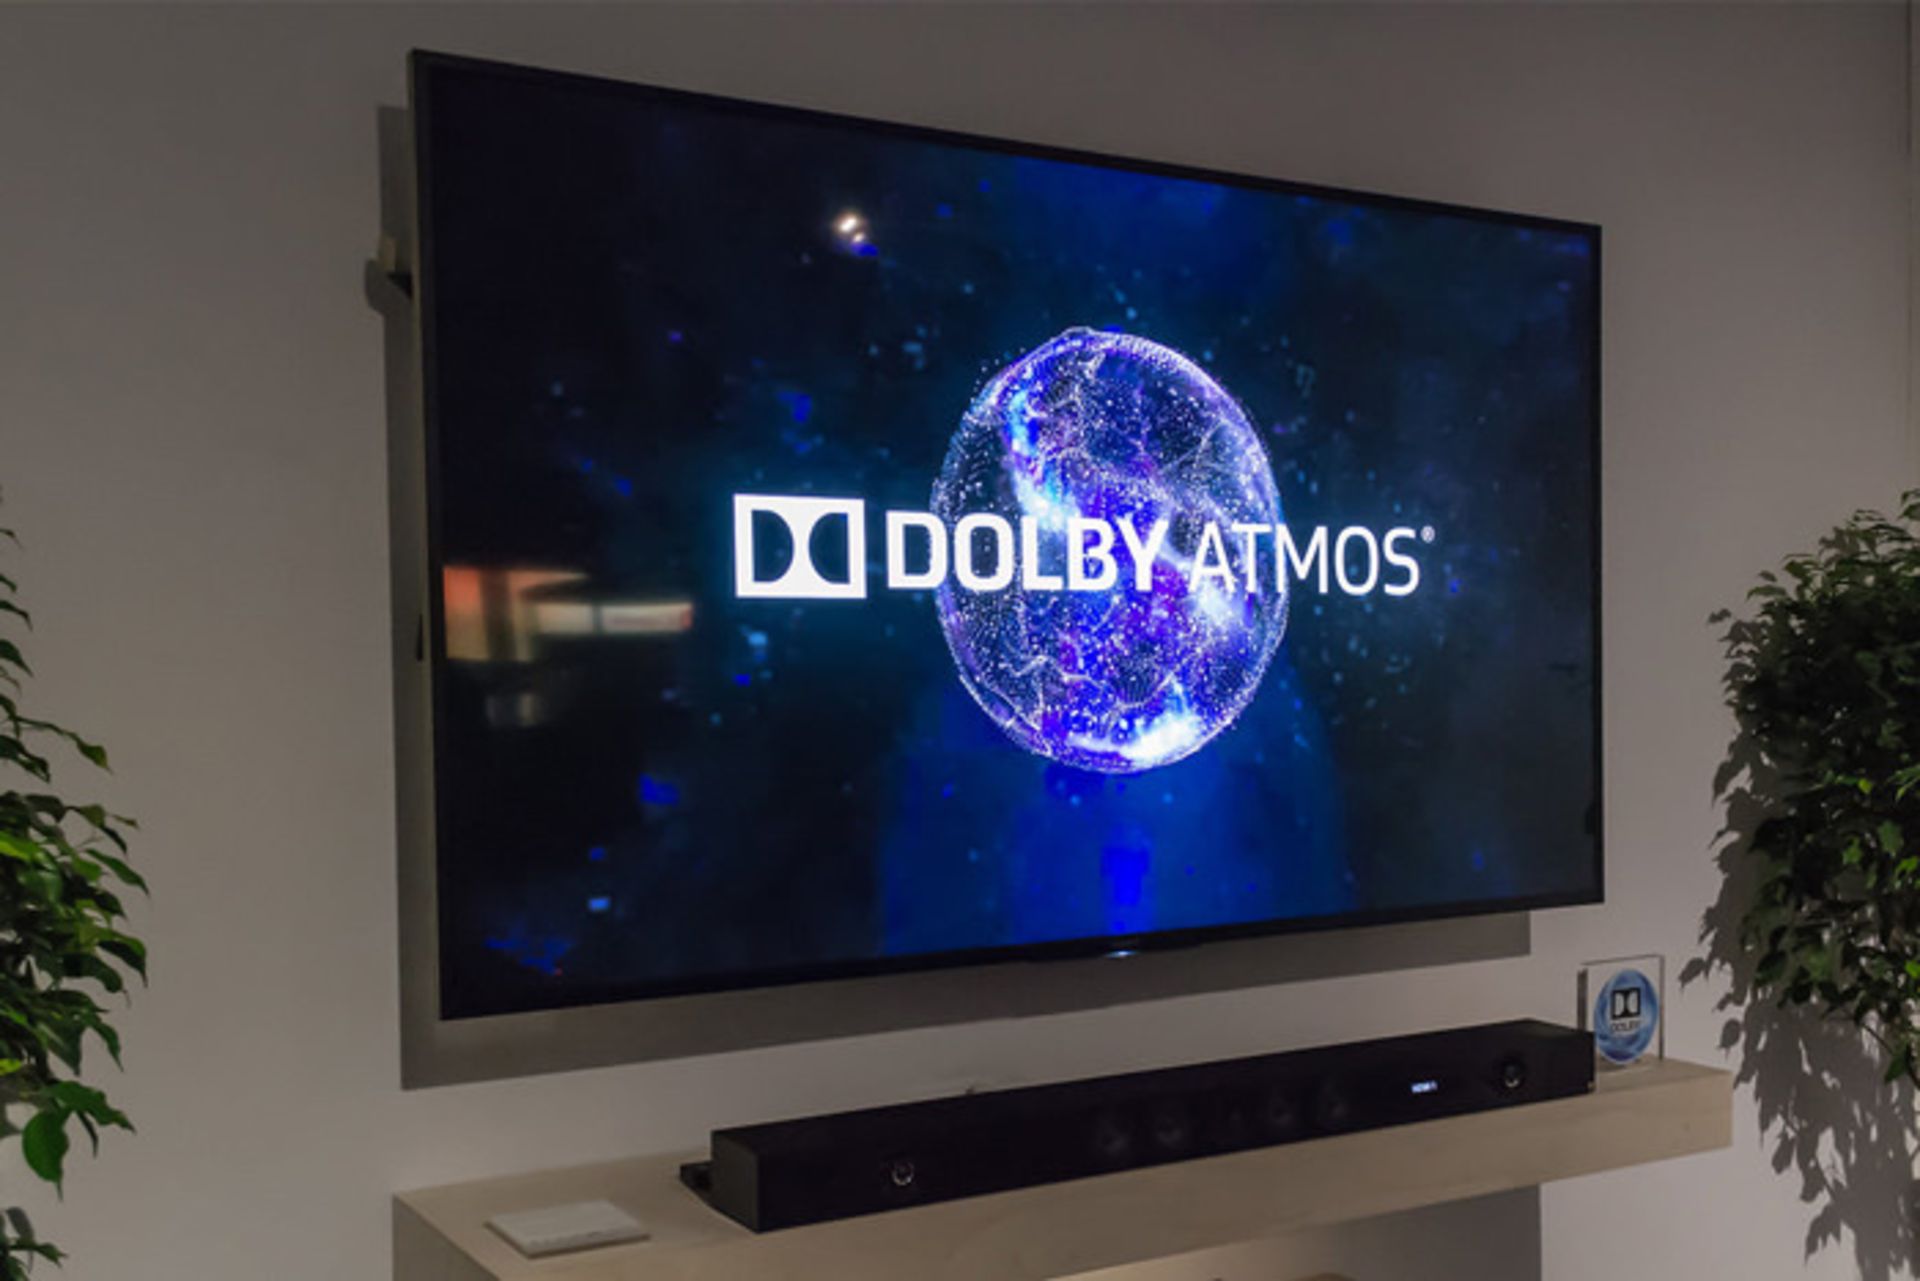 تلویزیون دالبی اتموس/ Dolby Atmos TV